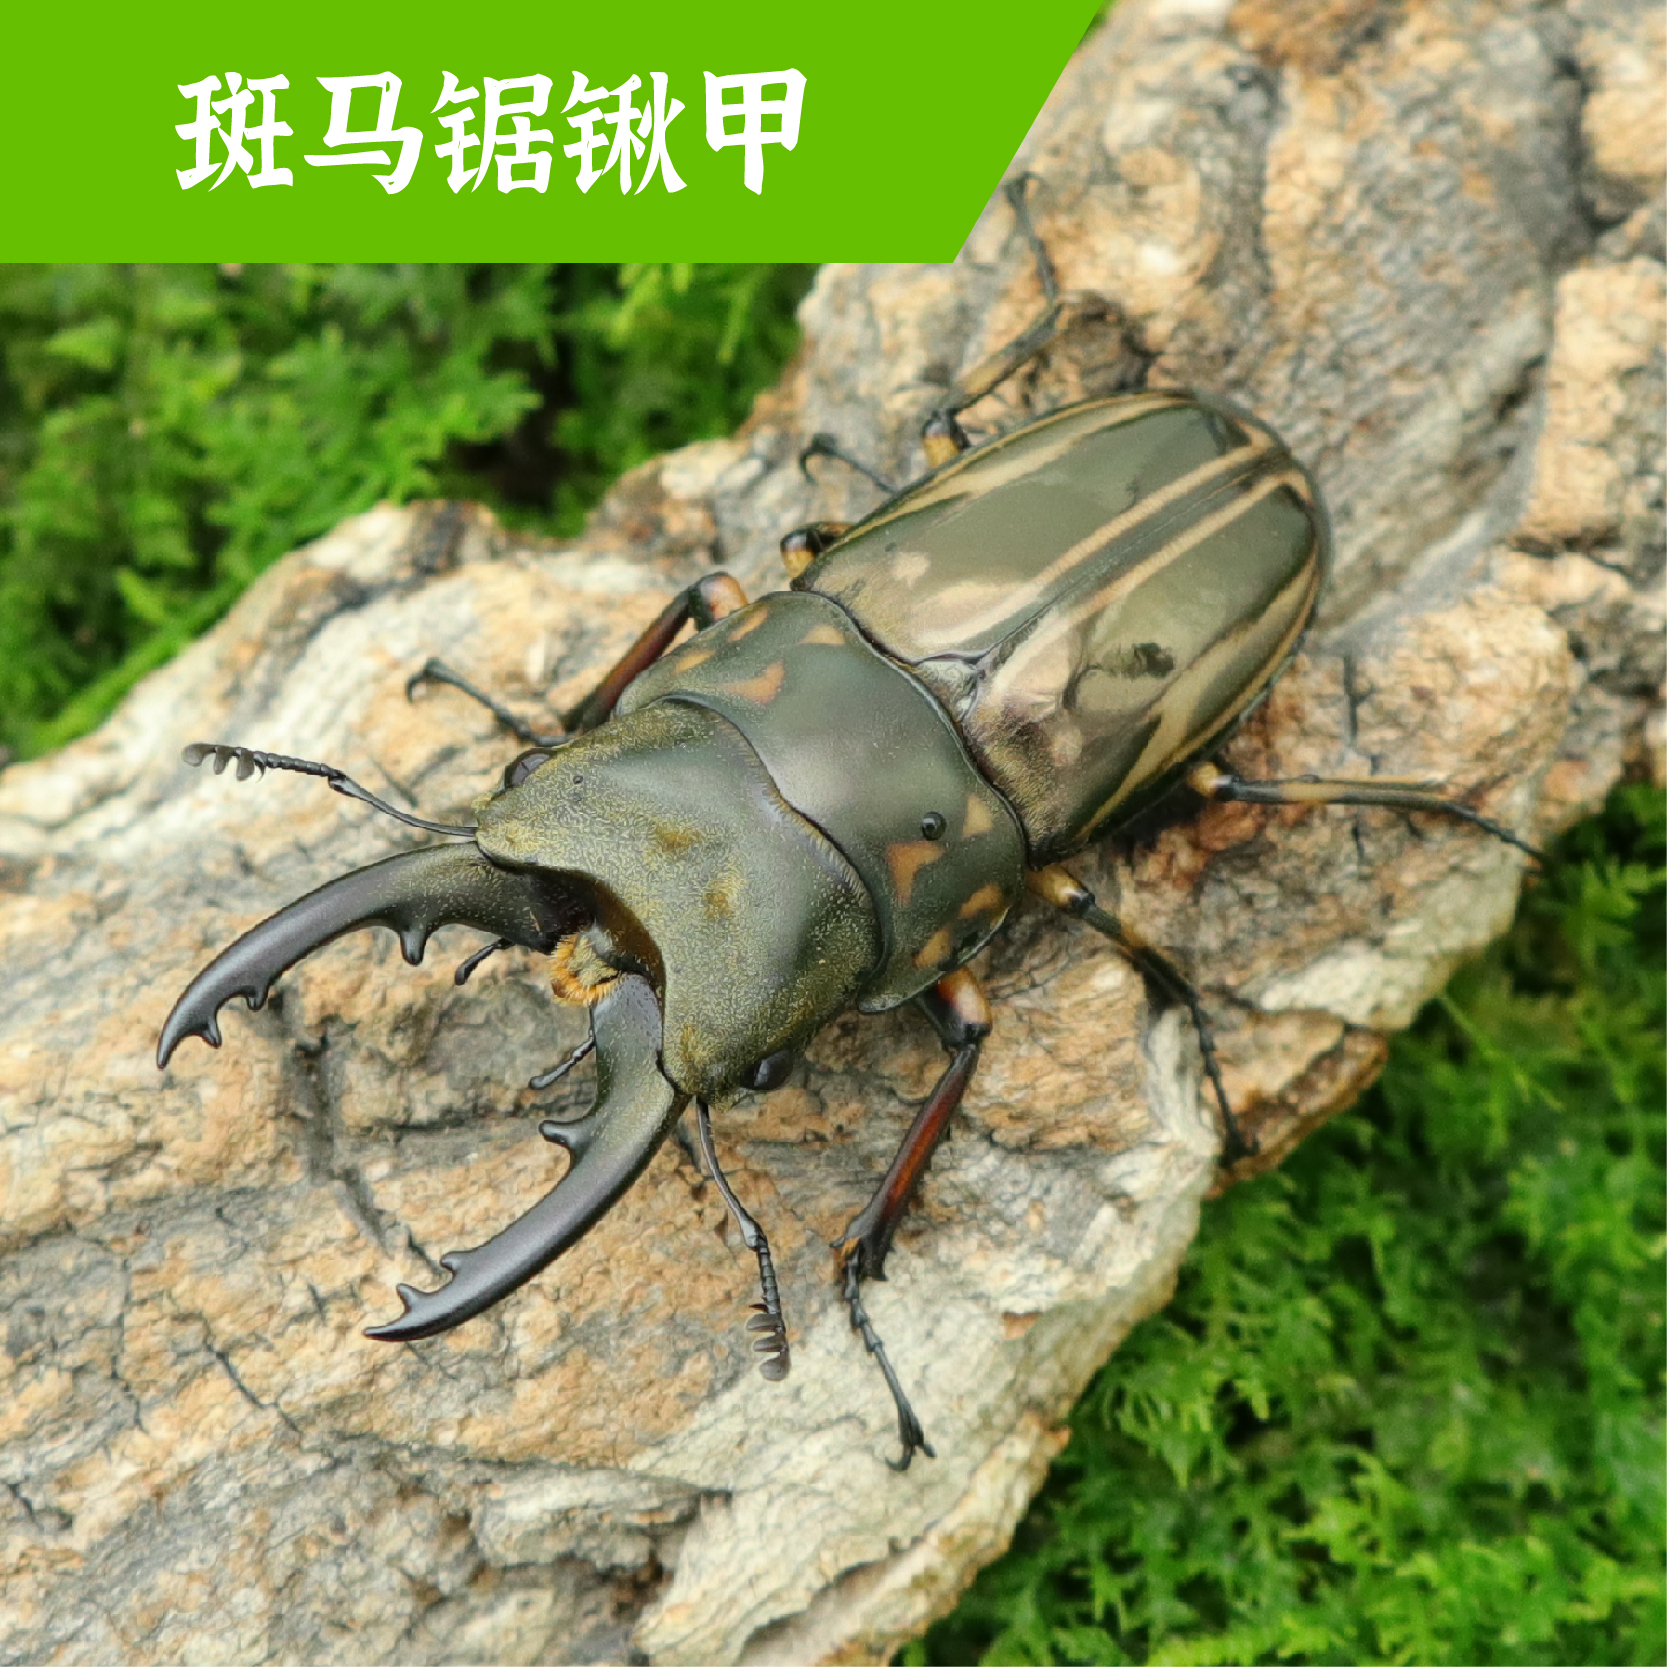 牧野虫社斑马锯锹甲甲虫宠物昆虫活虫幼虫成虫活物独角仙